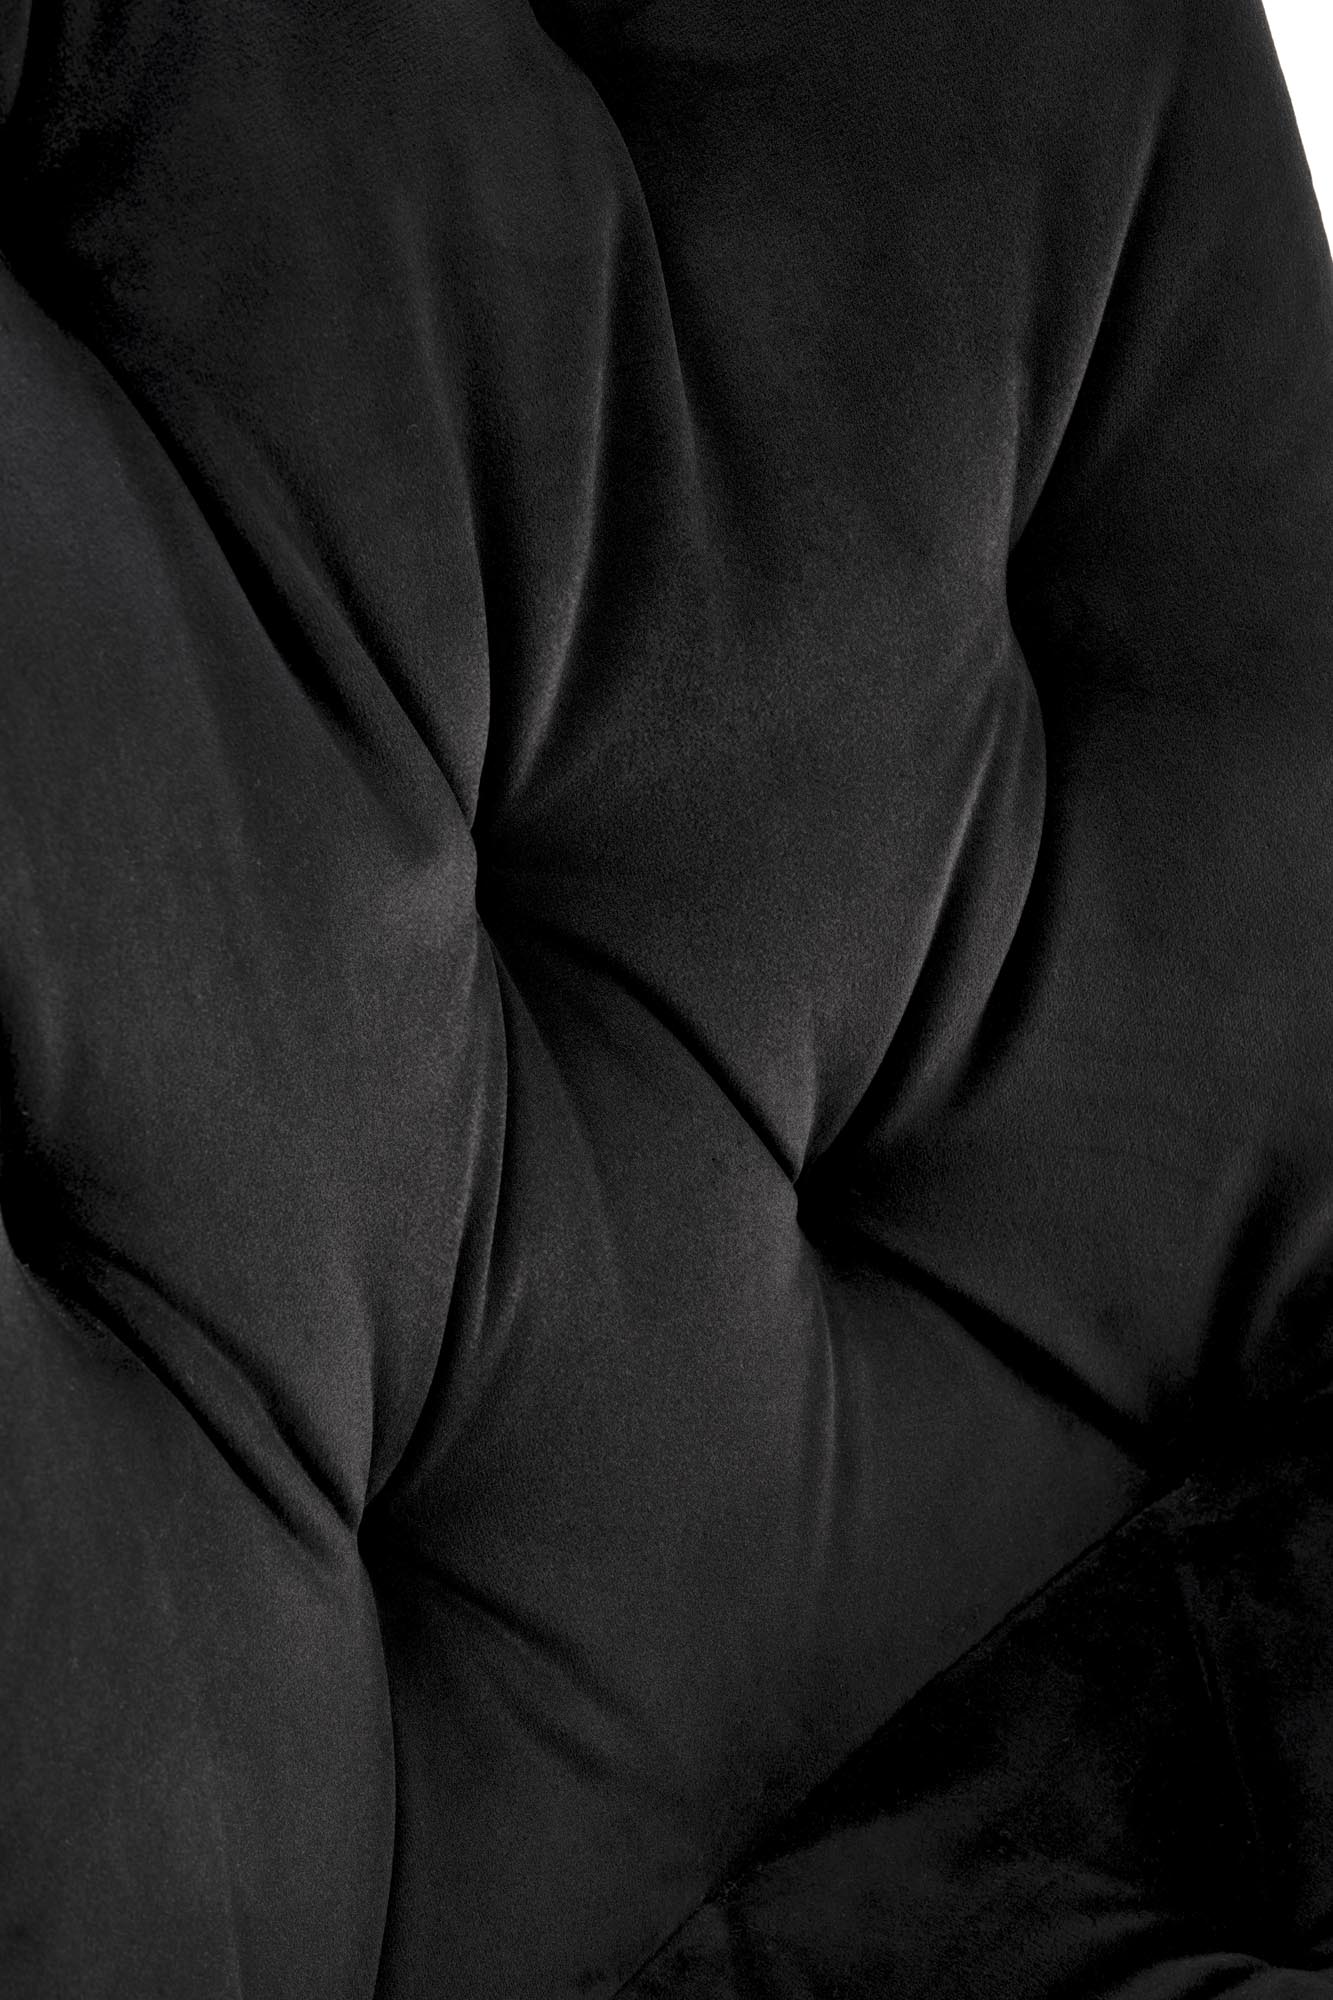 Krzeslo tapicerowane K519 - czarny krzeslo tapicerowane k519 - czarny